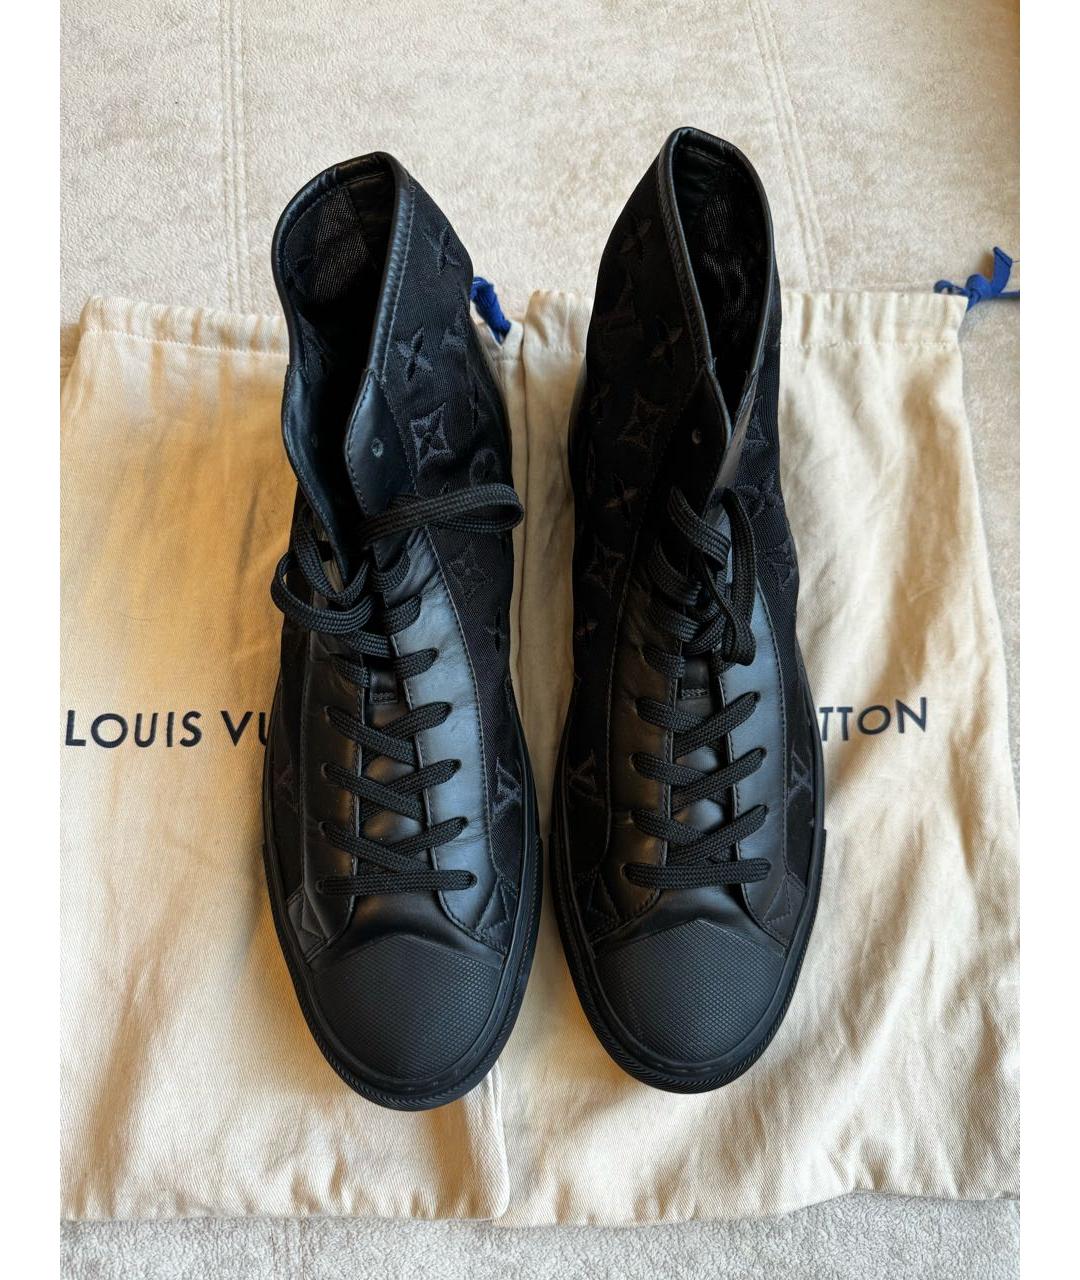 LOUIS VUITTON PRE-OWNED Черные высокие кроссовки / кеды, фото 2